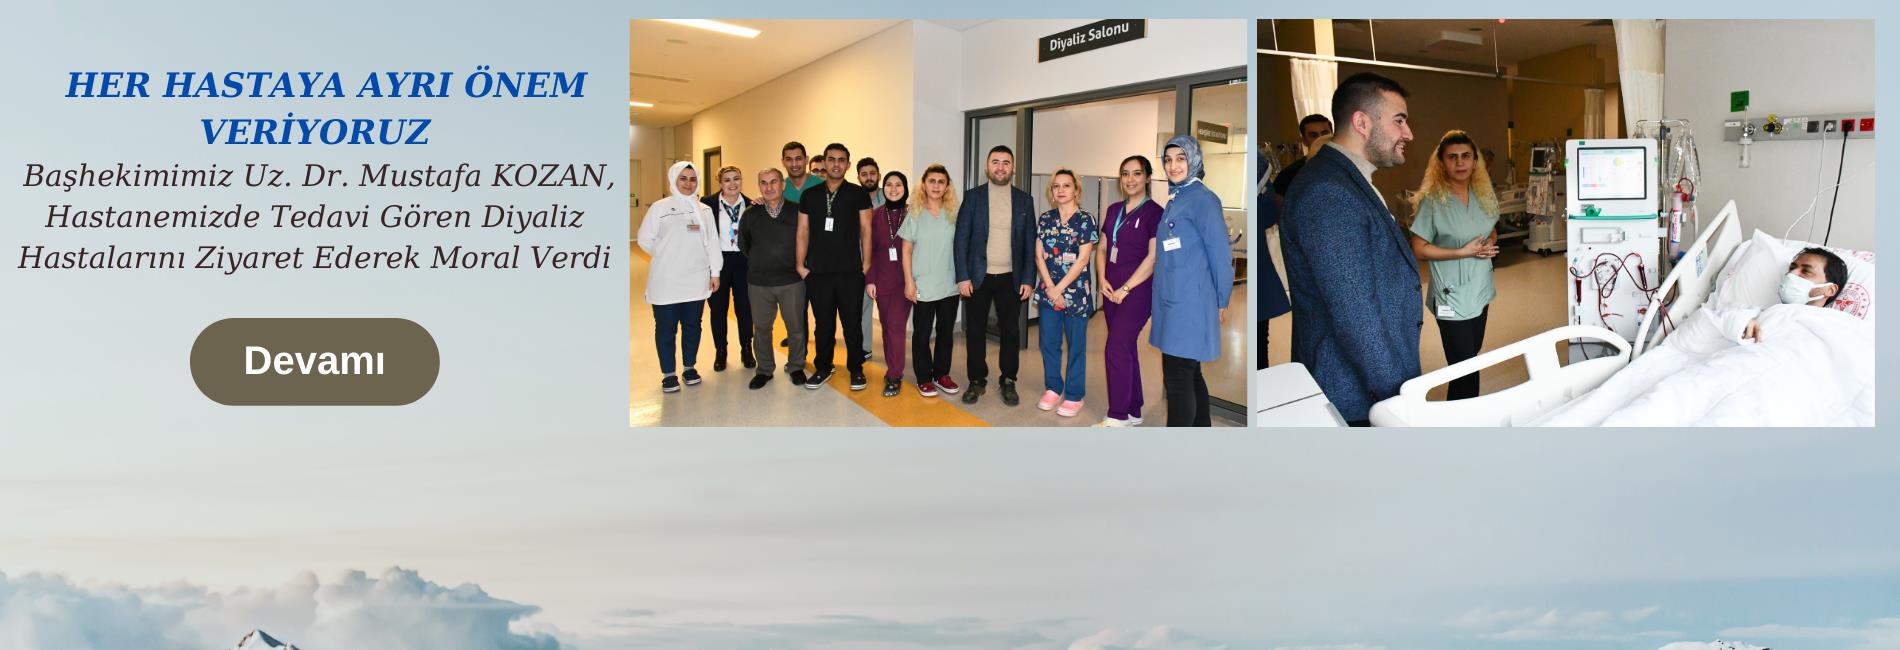 Başhekimimiz Uz. Dr. Mustafa KOZAN, Hastanemizde Tedavi Gören Diyaliz Hastalarını Ziyaret Ederek Moral Verdi